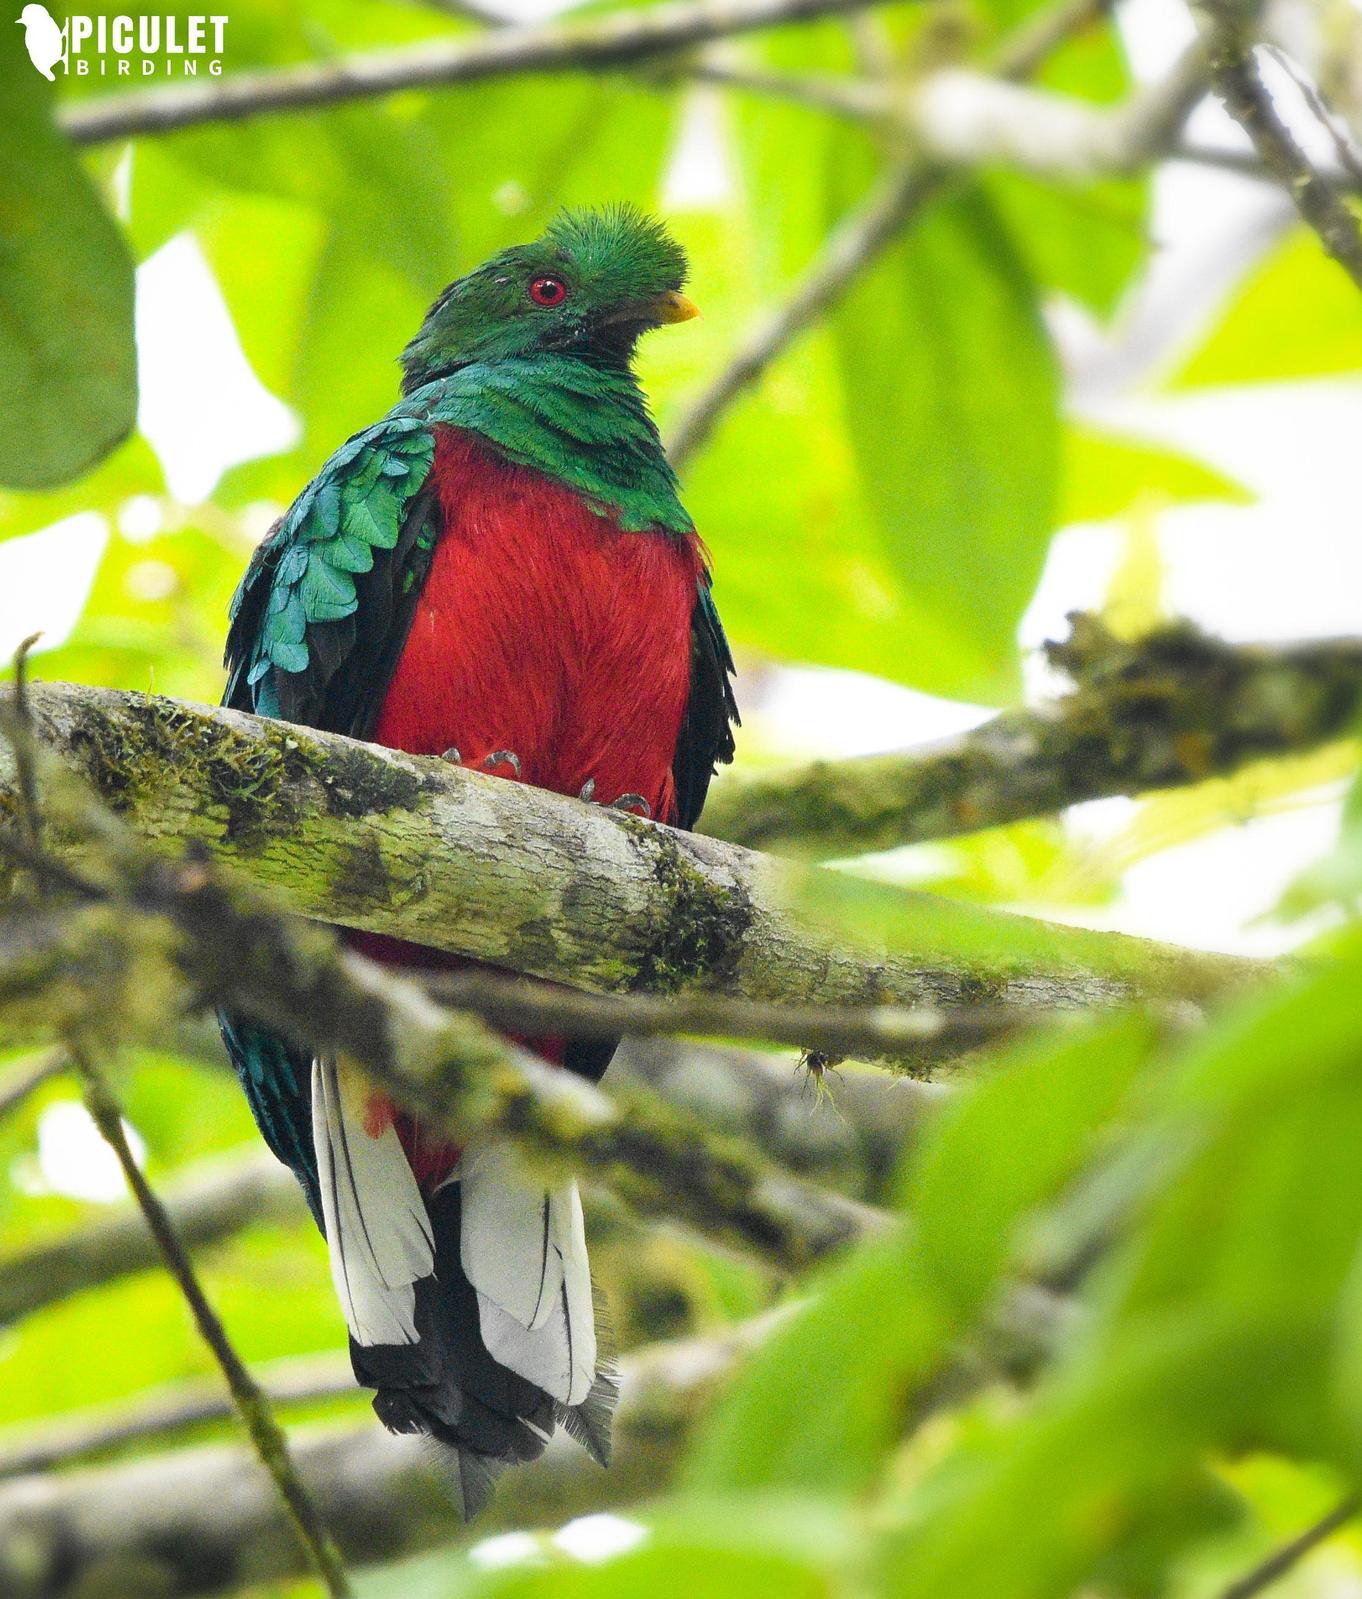 Crested Quetzal Photo by Julio Delgado